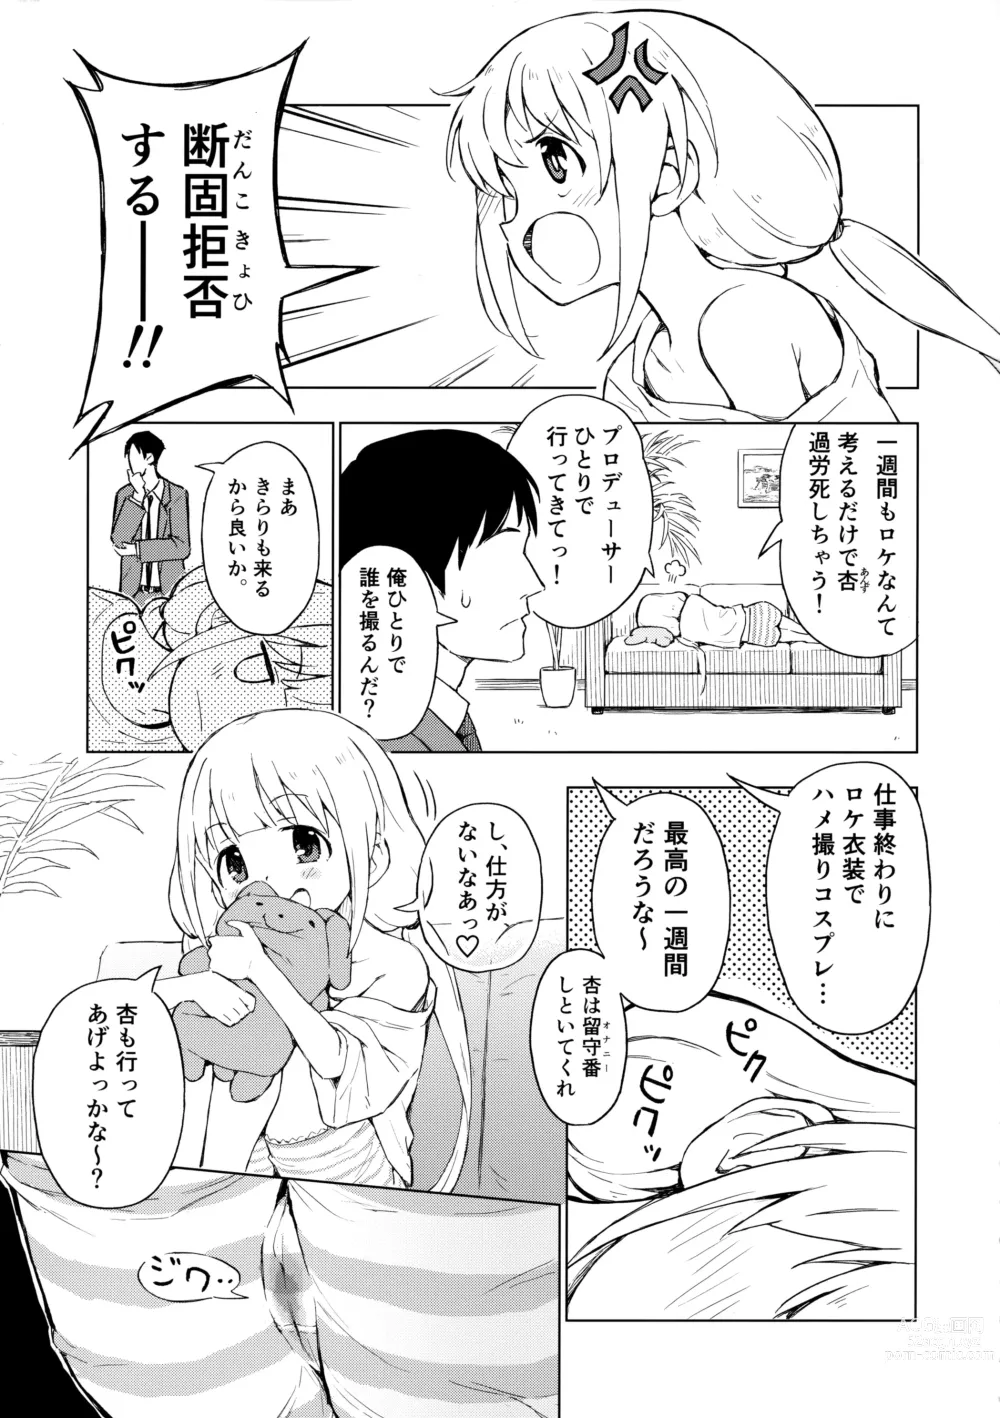 Page 2 of doujinshi AnKira Ura Satsueikai Cosplay Hametori 7-renkin!